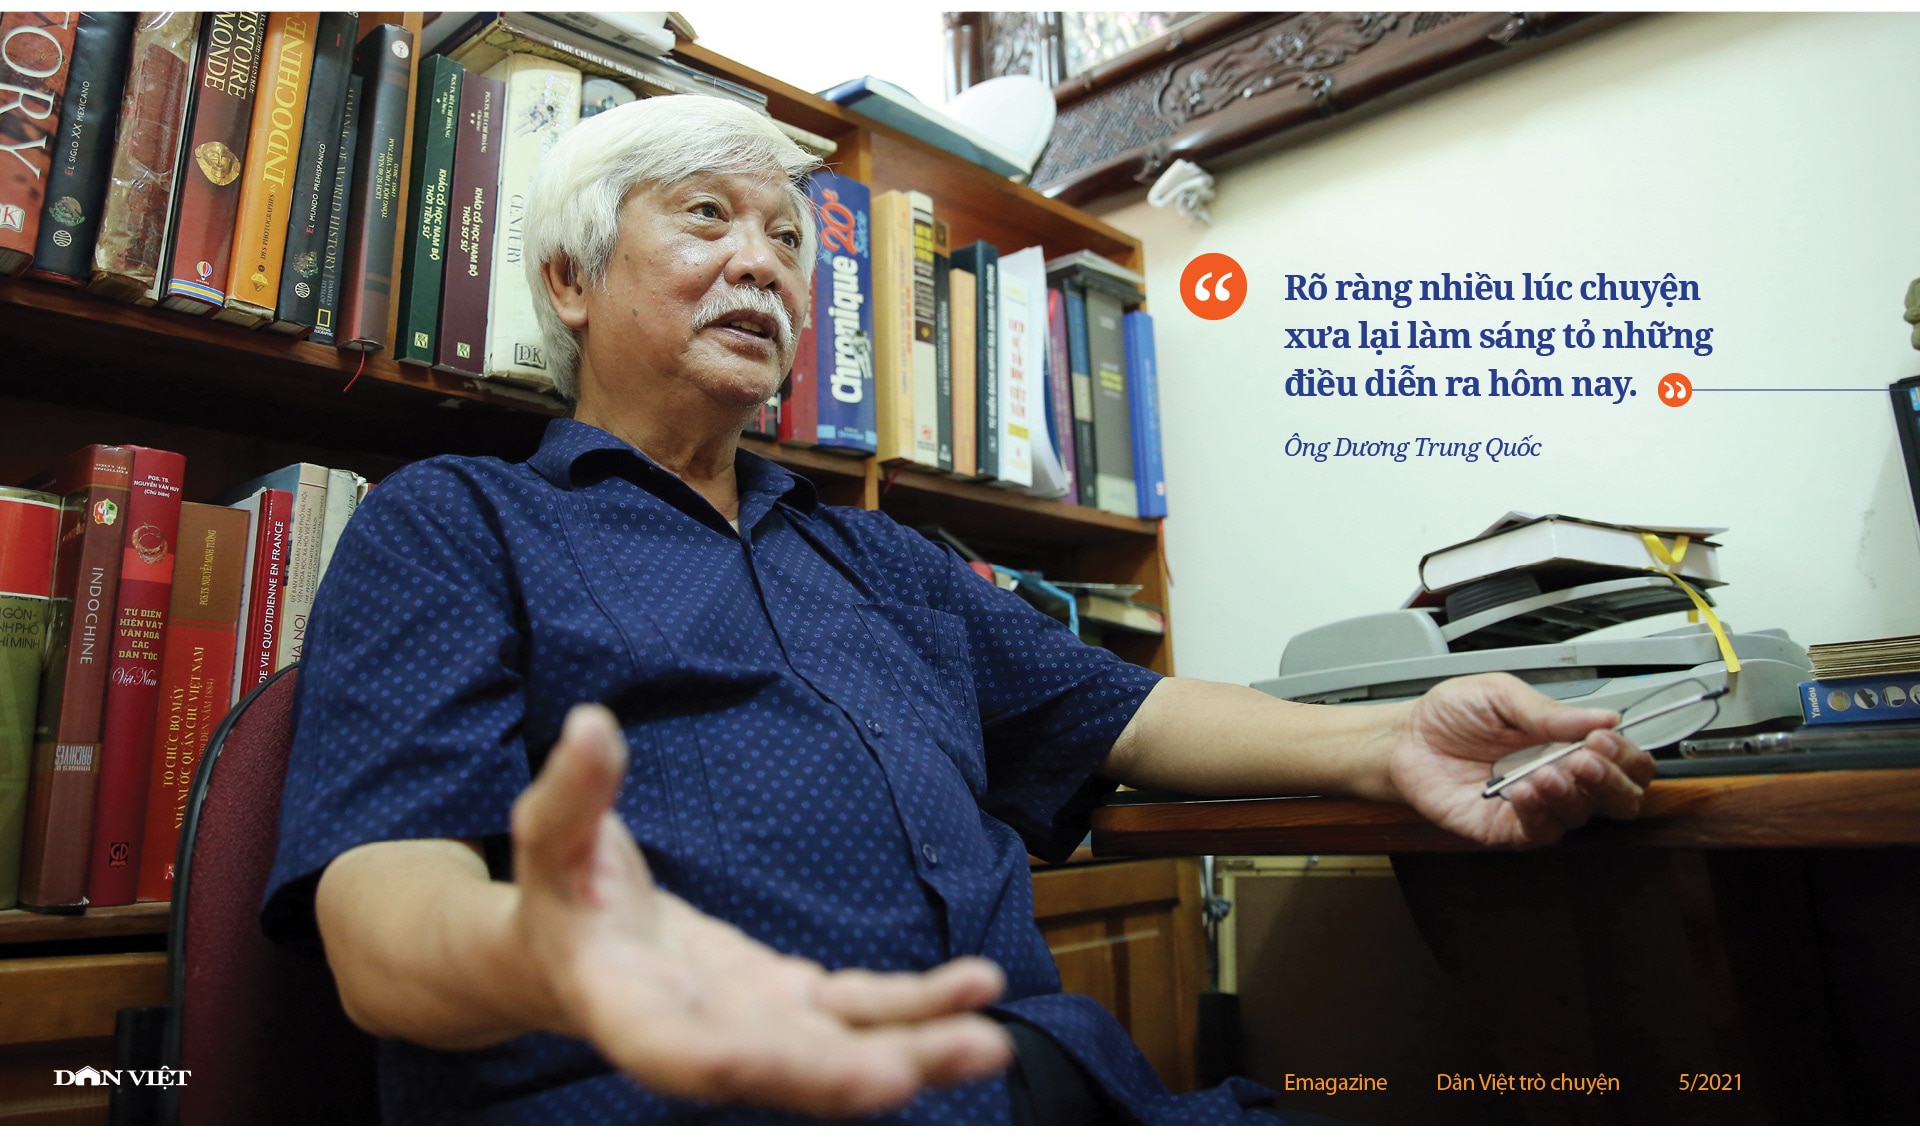 Ông Dương Trung Quốc chia sẻ những chuyện ít người biết sau 20 năm gắn bó nghị trường - Ảnh 16.